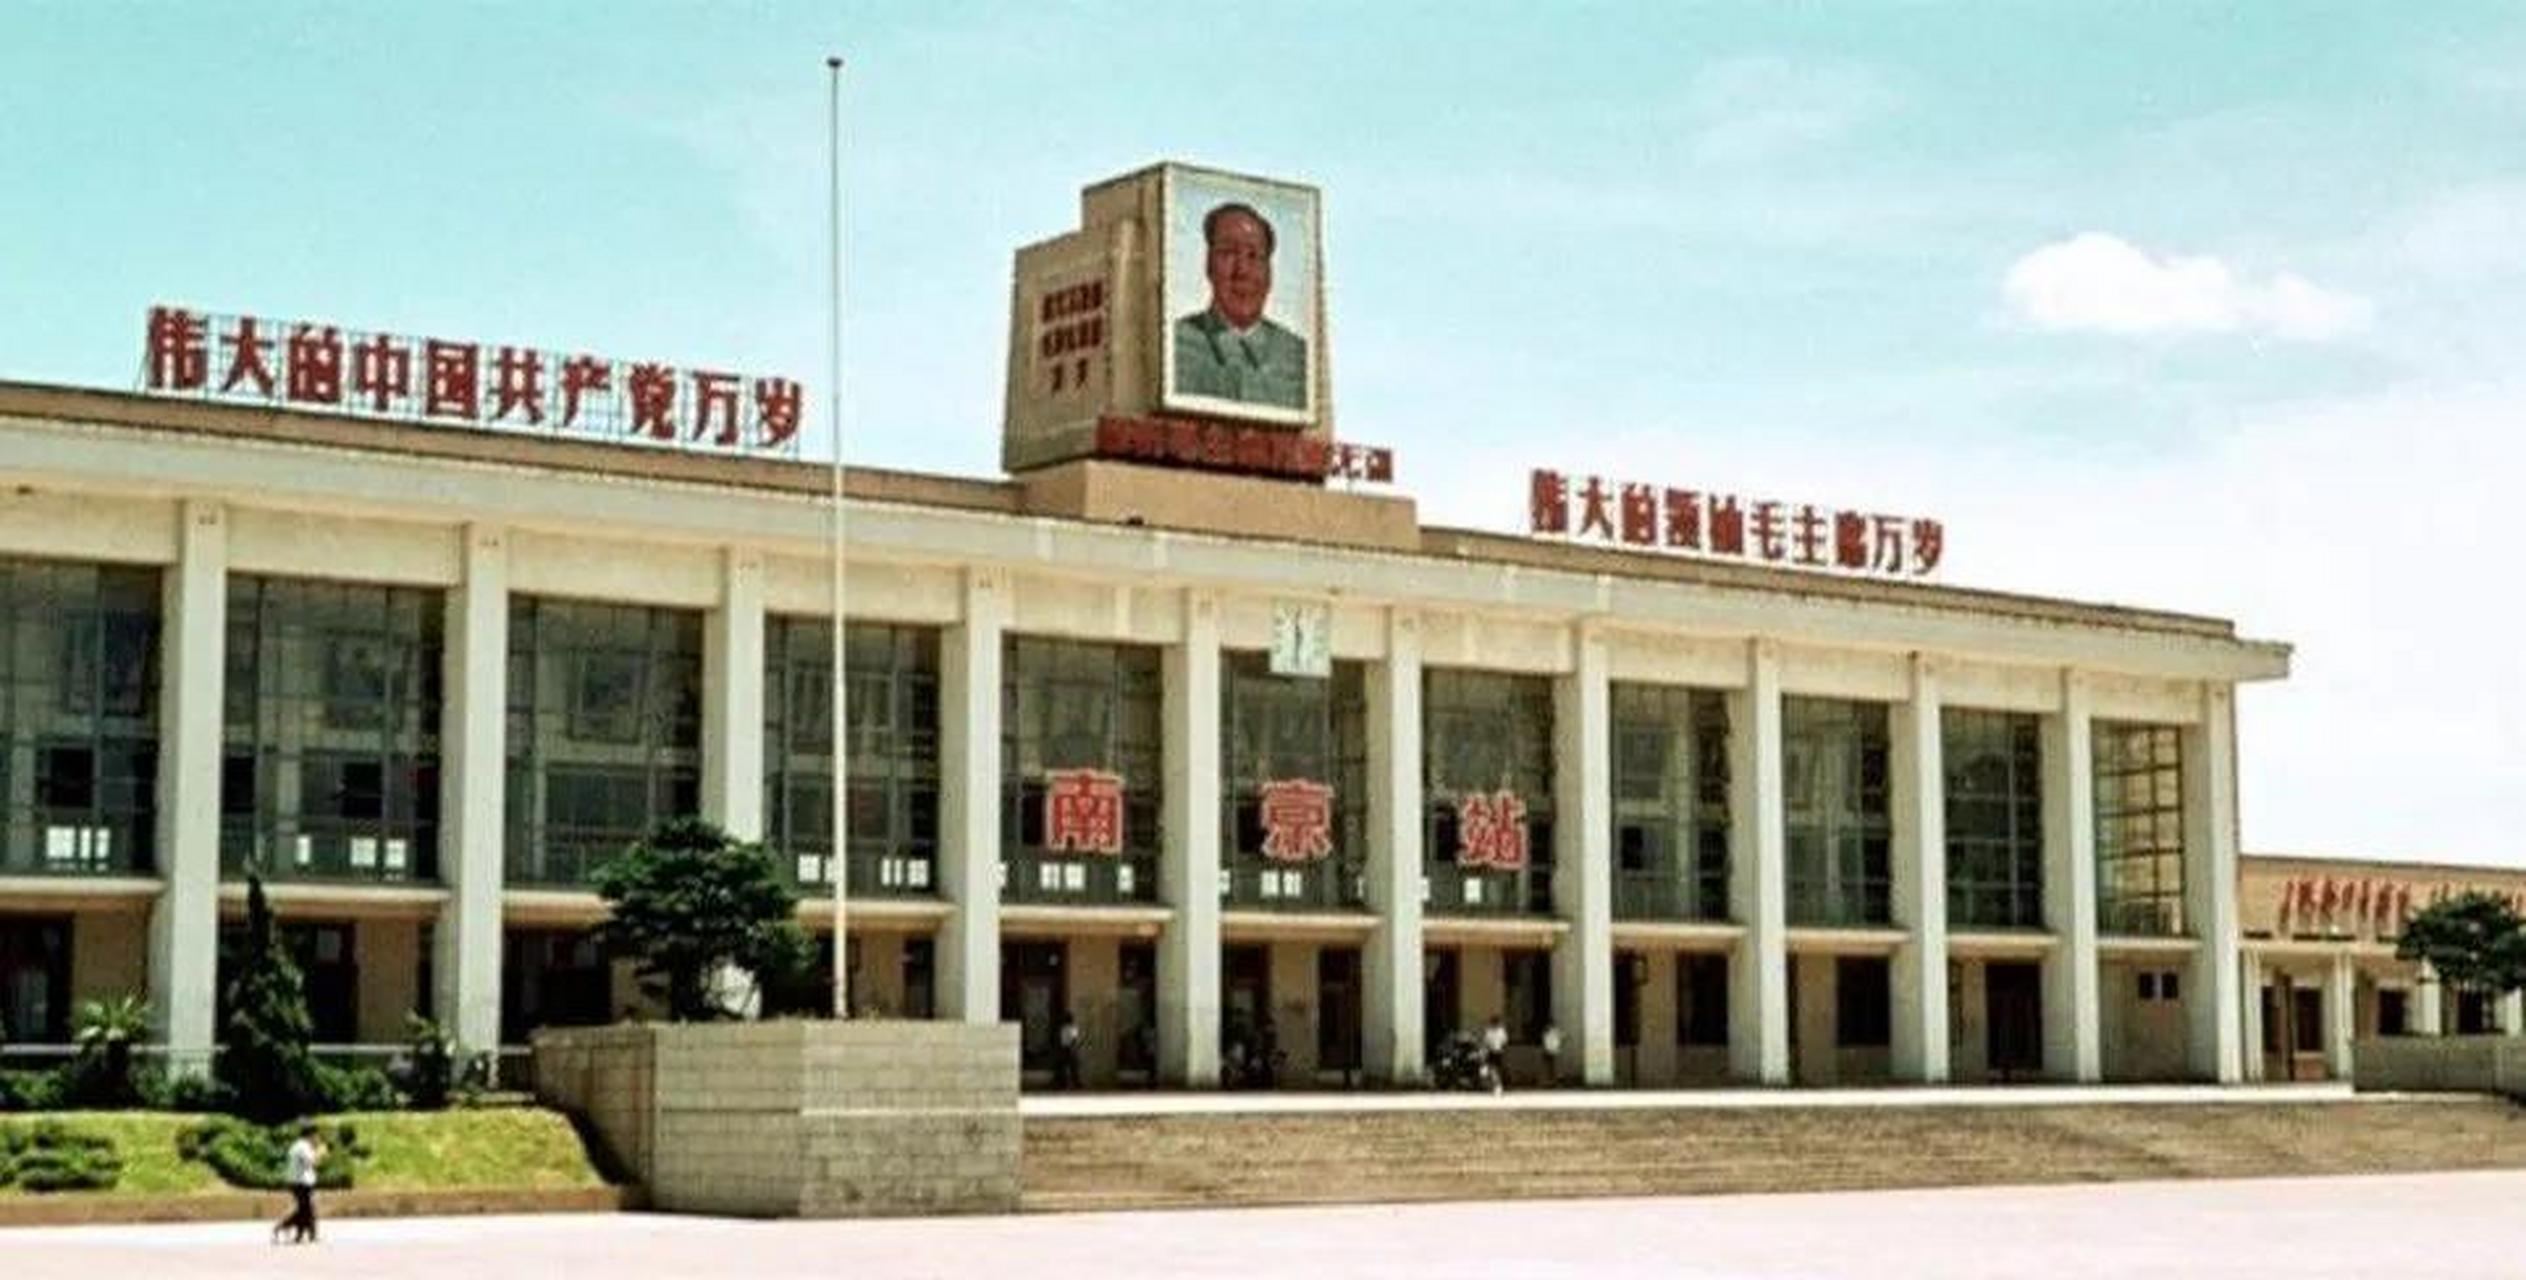 老照片 1971年的南京火车站 图二是现在是现在南京火车站,这个变化